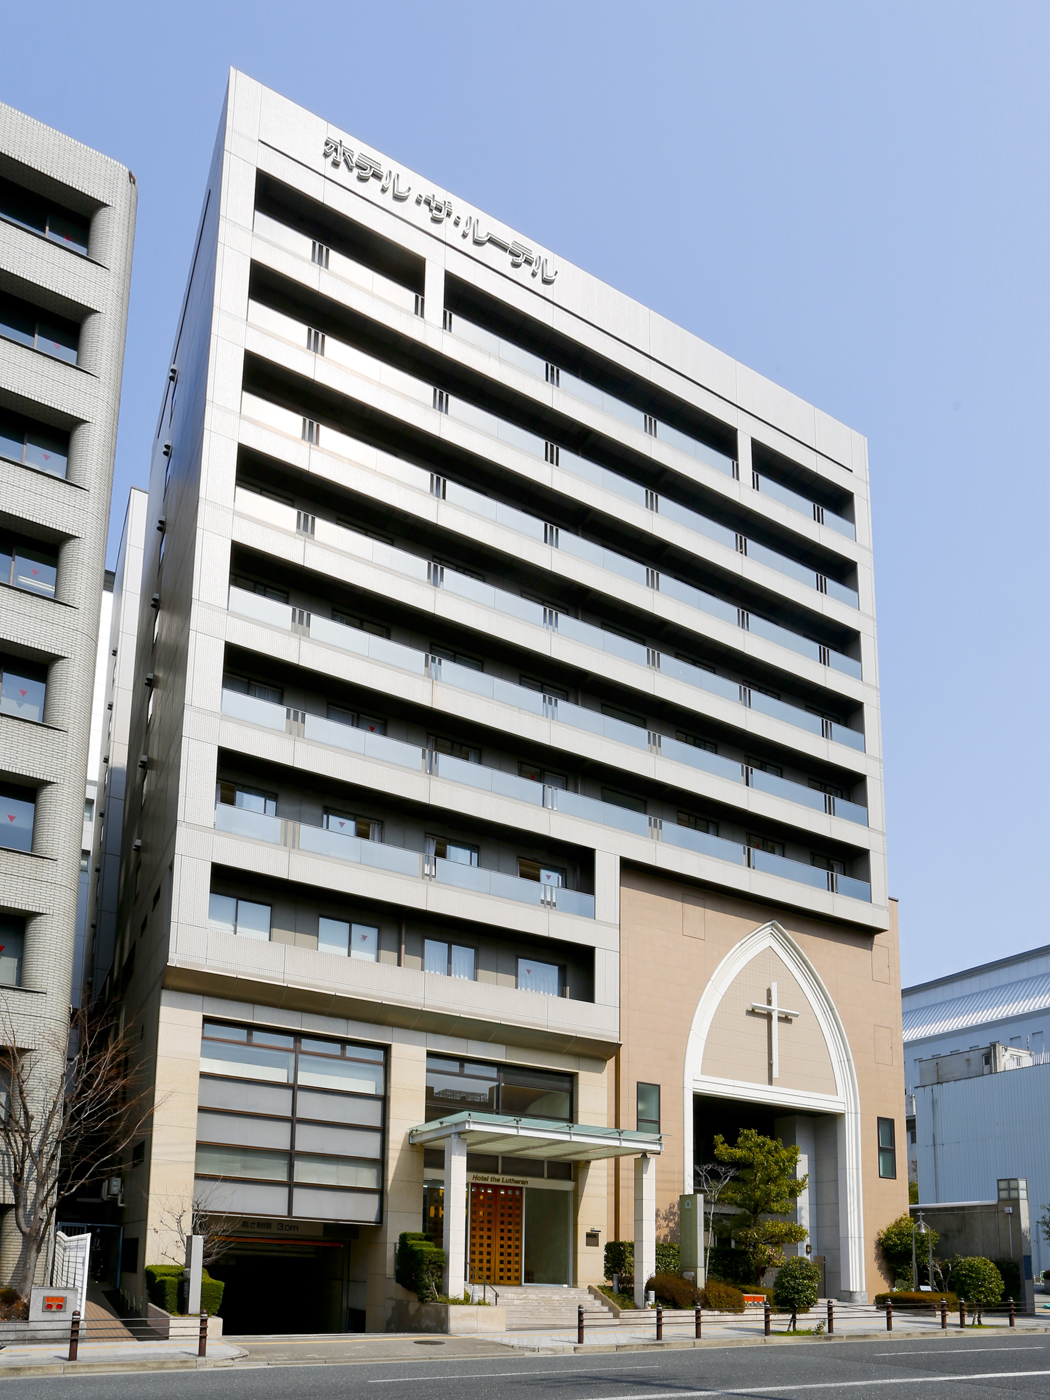 【ネットができる宿|大阪城を観に行こう】ホテル・ザ・ルーテル